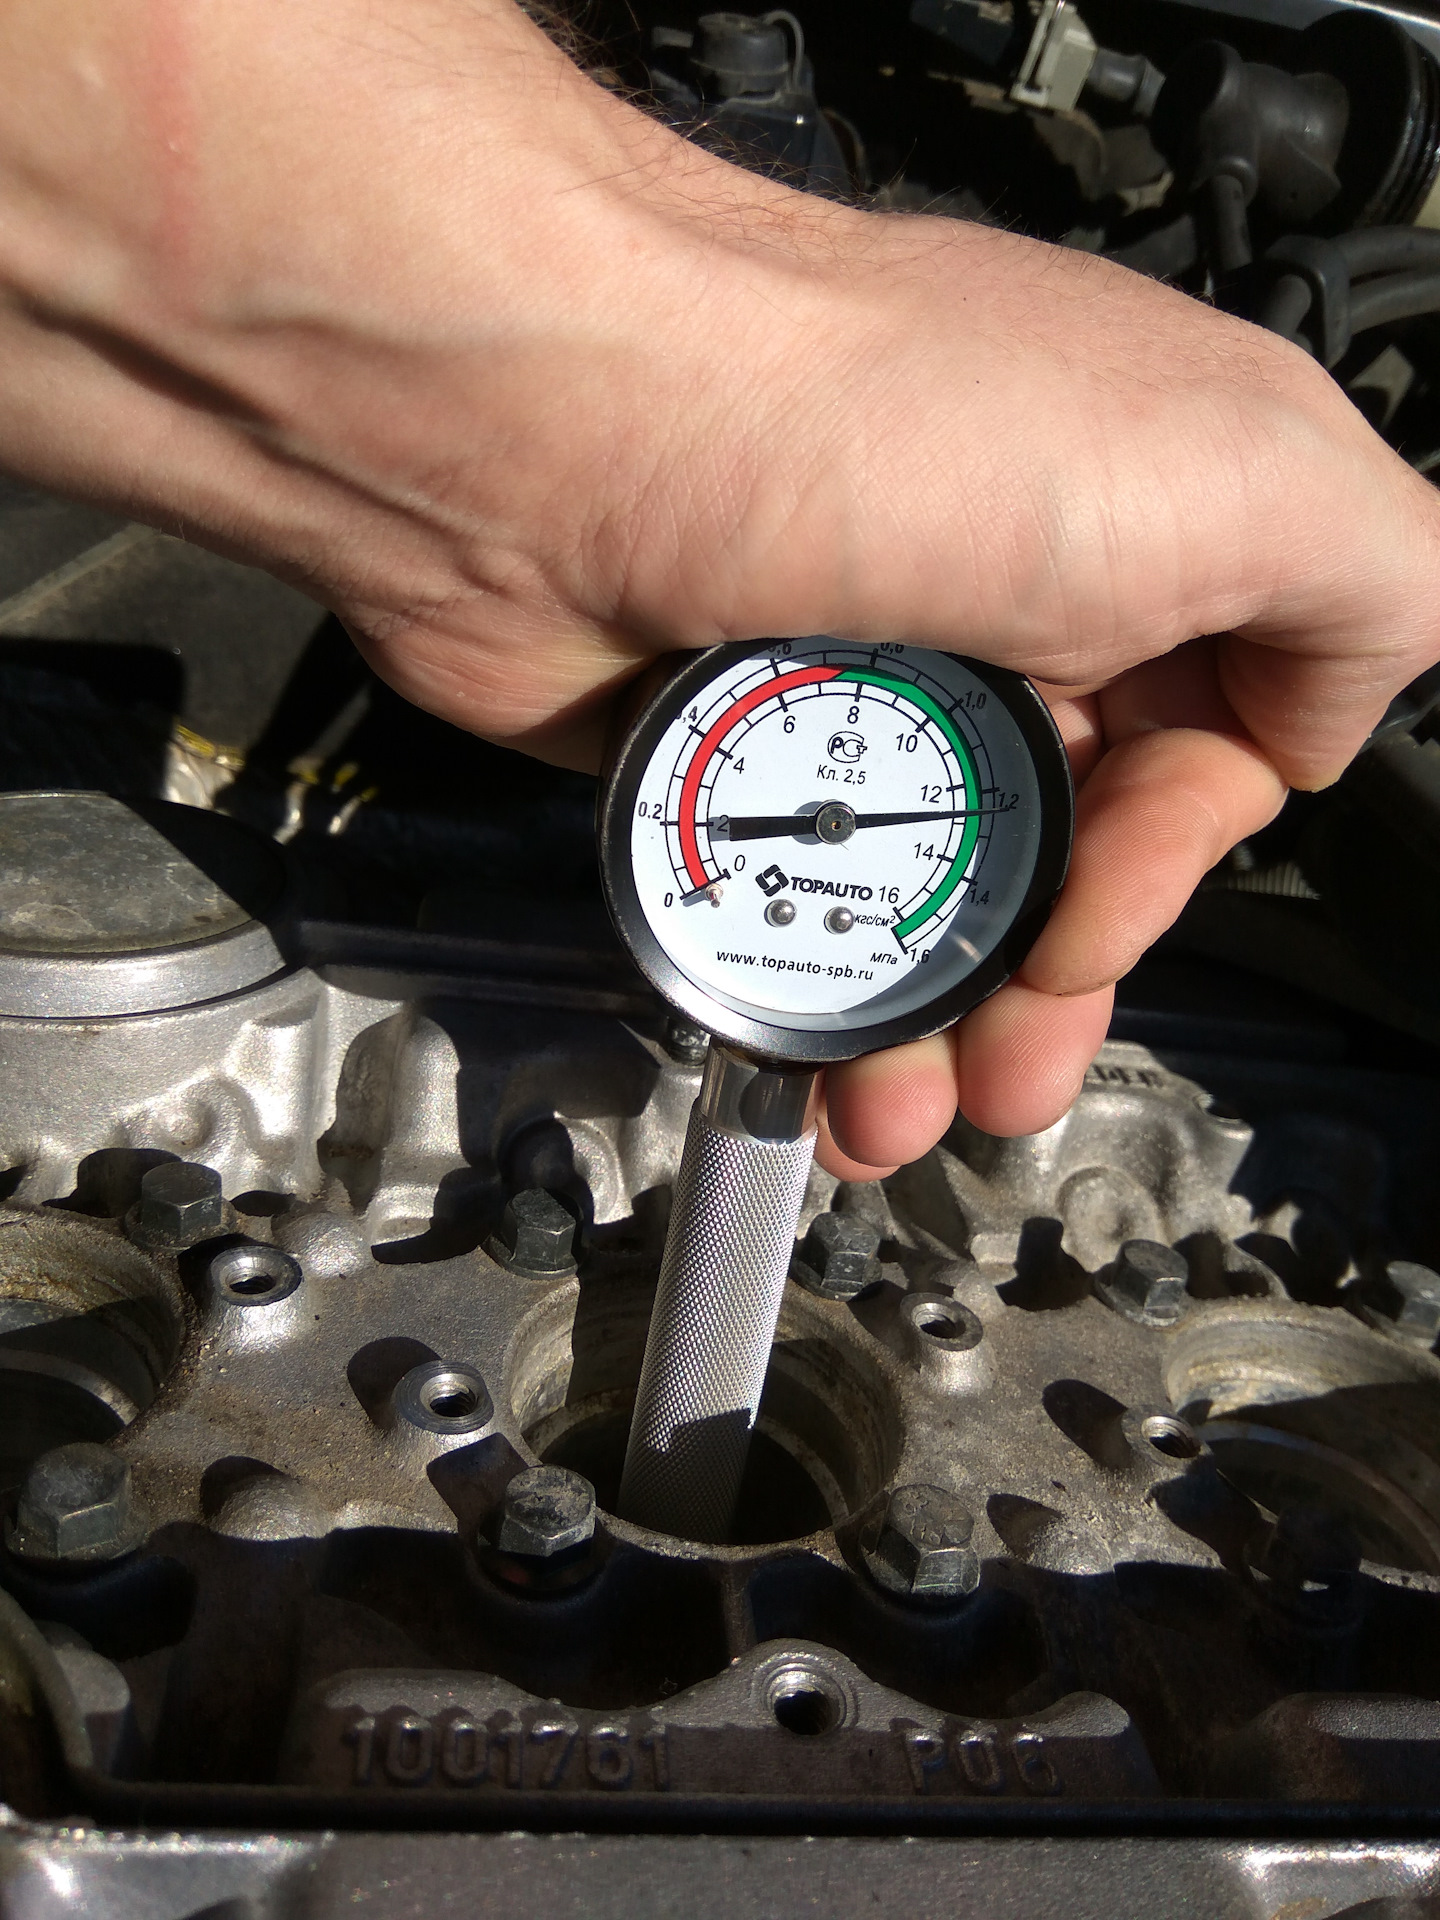 Измерение компрессиии в цилиндрах карбюраторного двигателя автомобиля ВАЗ 2108, 2109, 21099 при помощи компрессометра Определение причин низкой компрессии